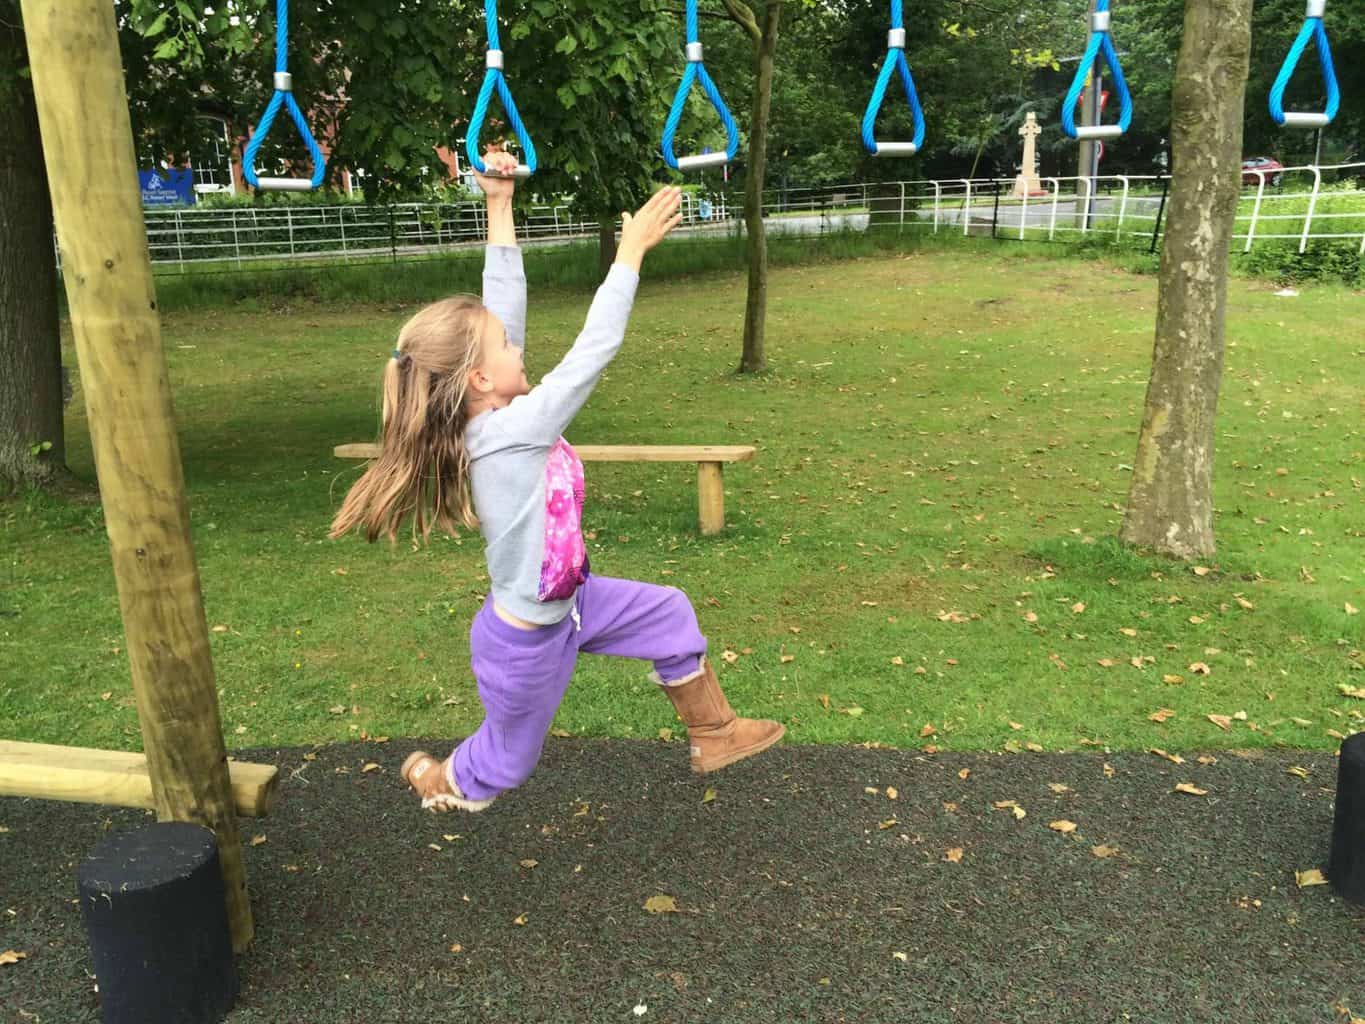 Little girl swinging on monkey bars